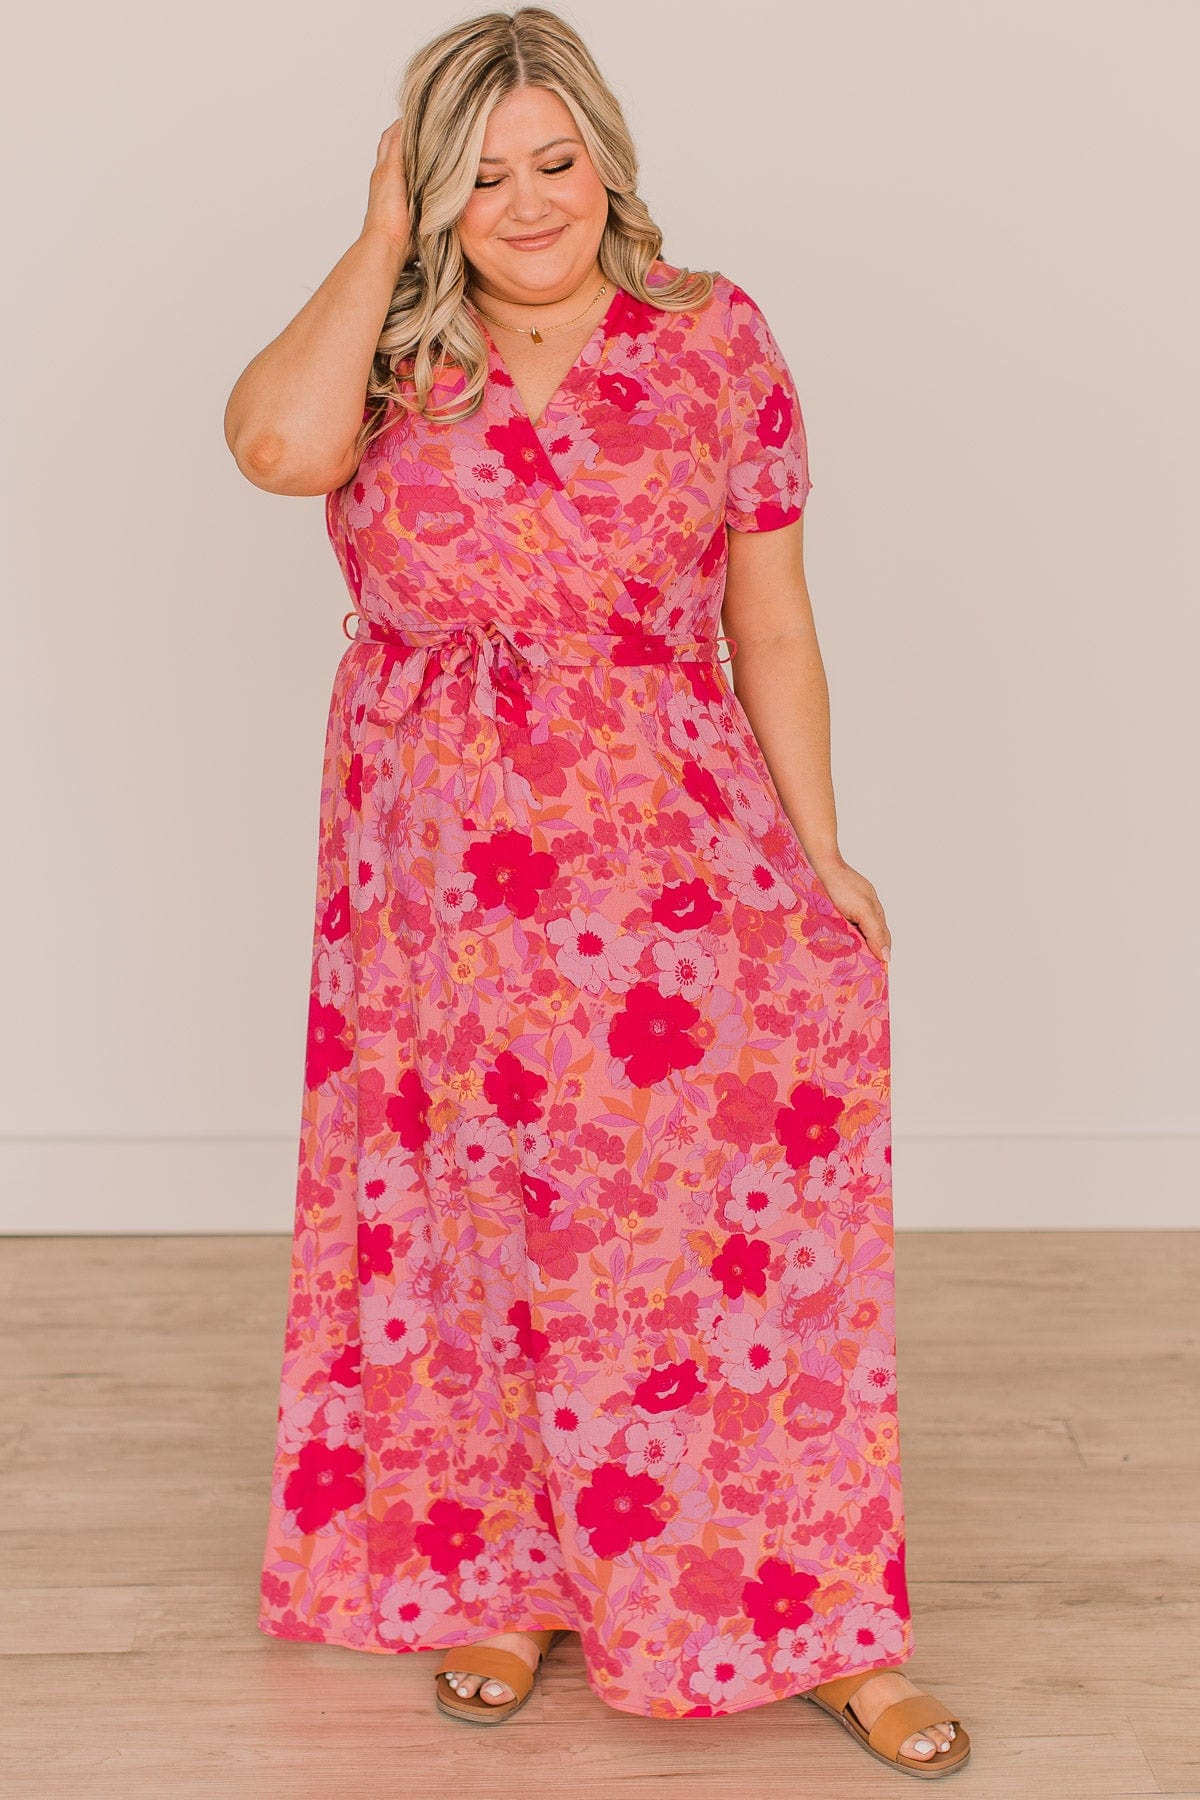 Keep You Around Floral Maxi Dress- Pink